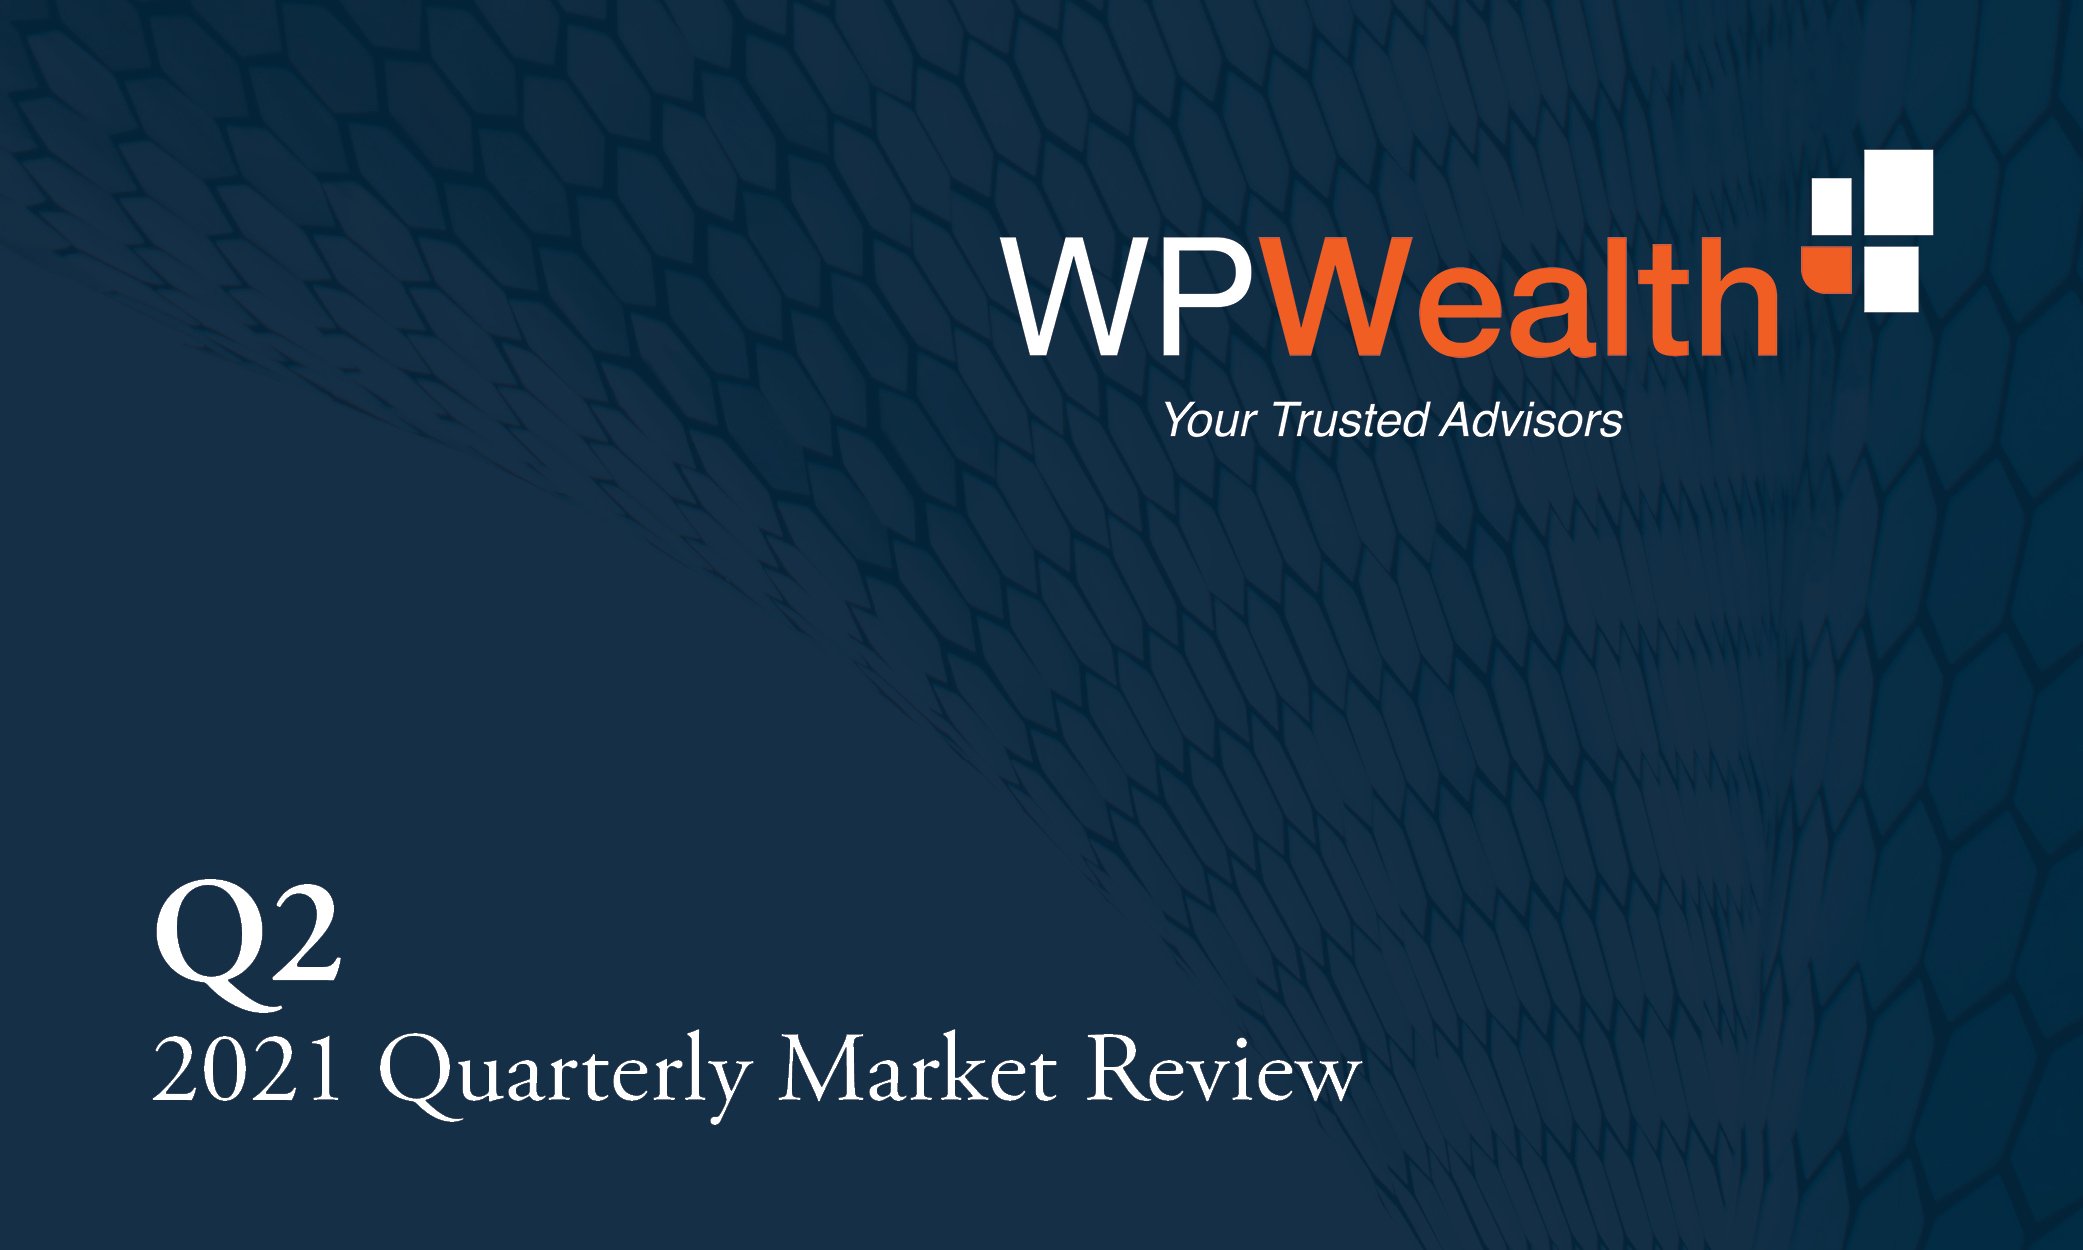 Q2 2021 Quarterly Market Review